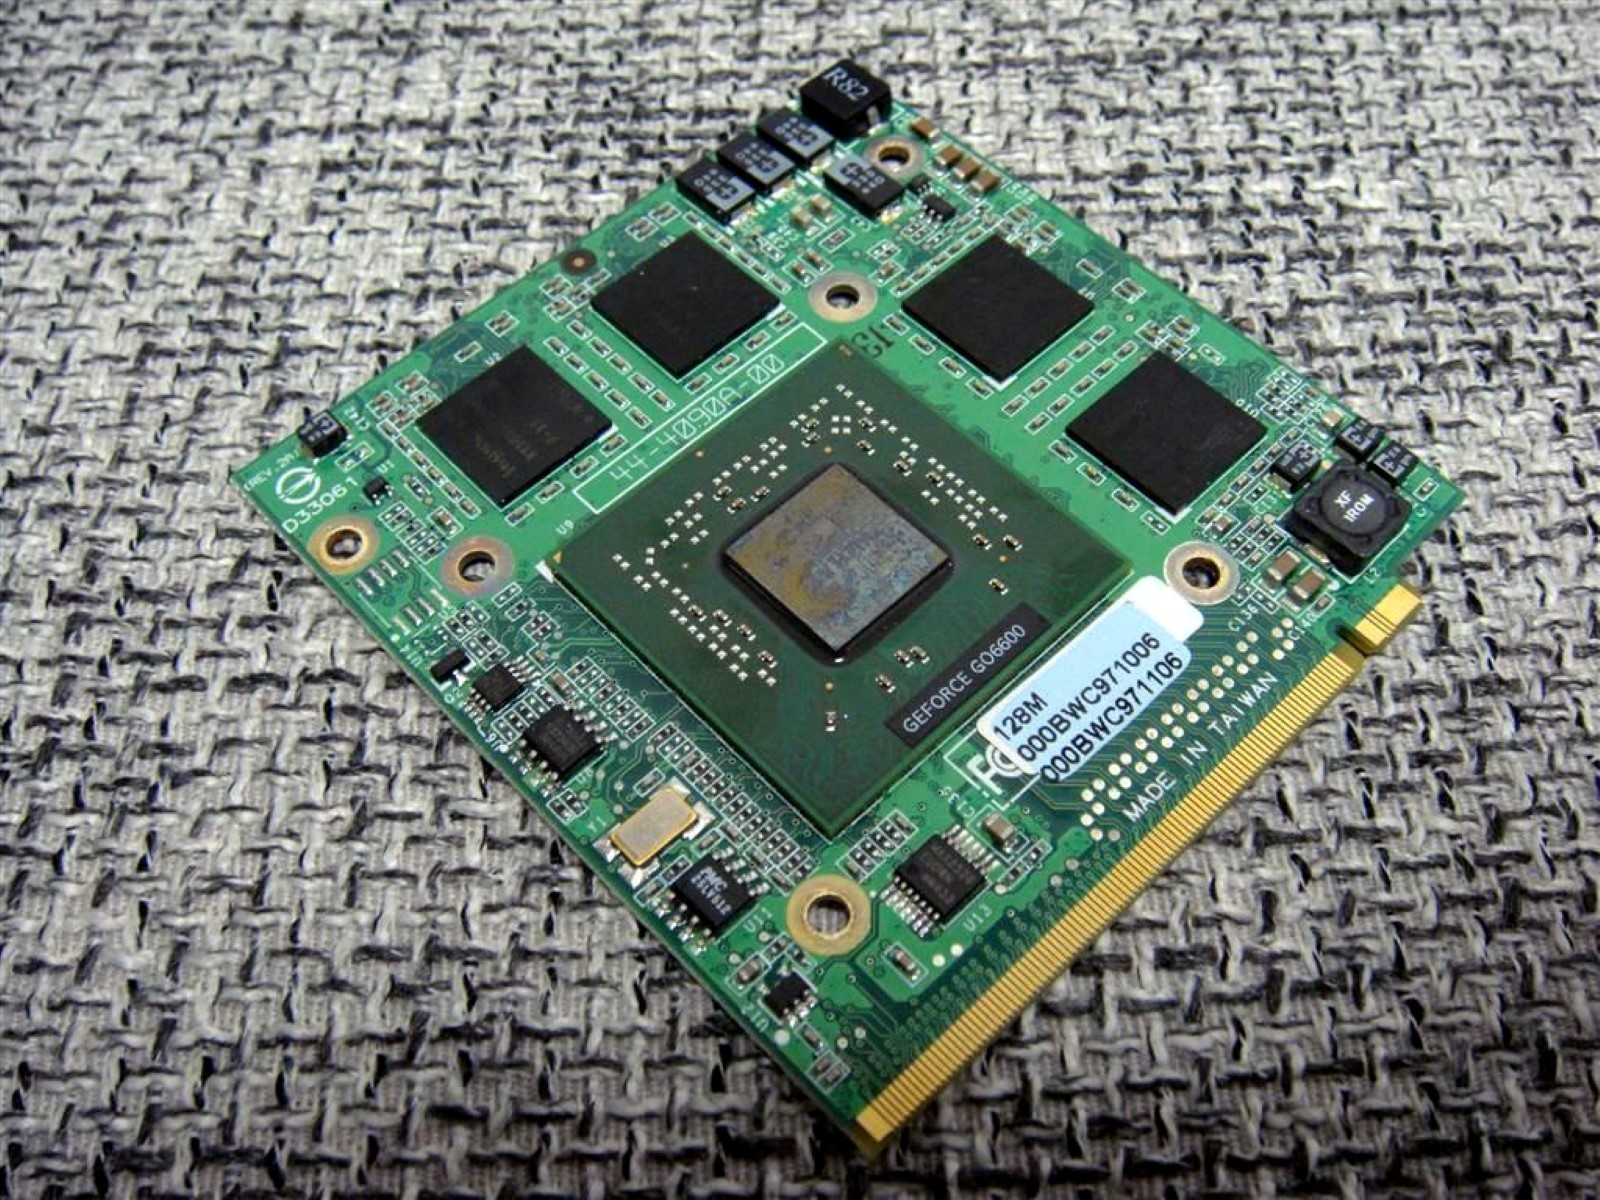 nVidia Go6600 MXM Card